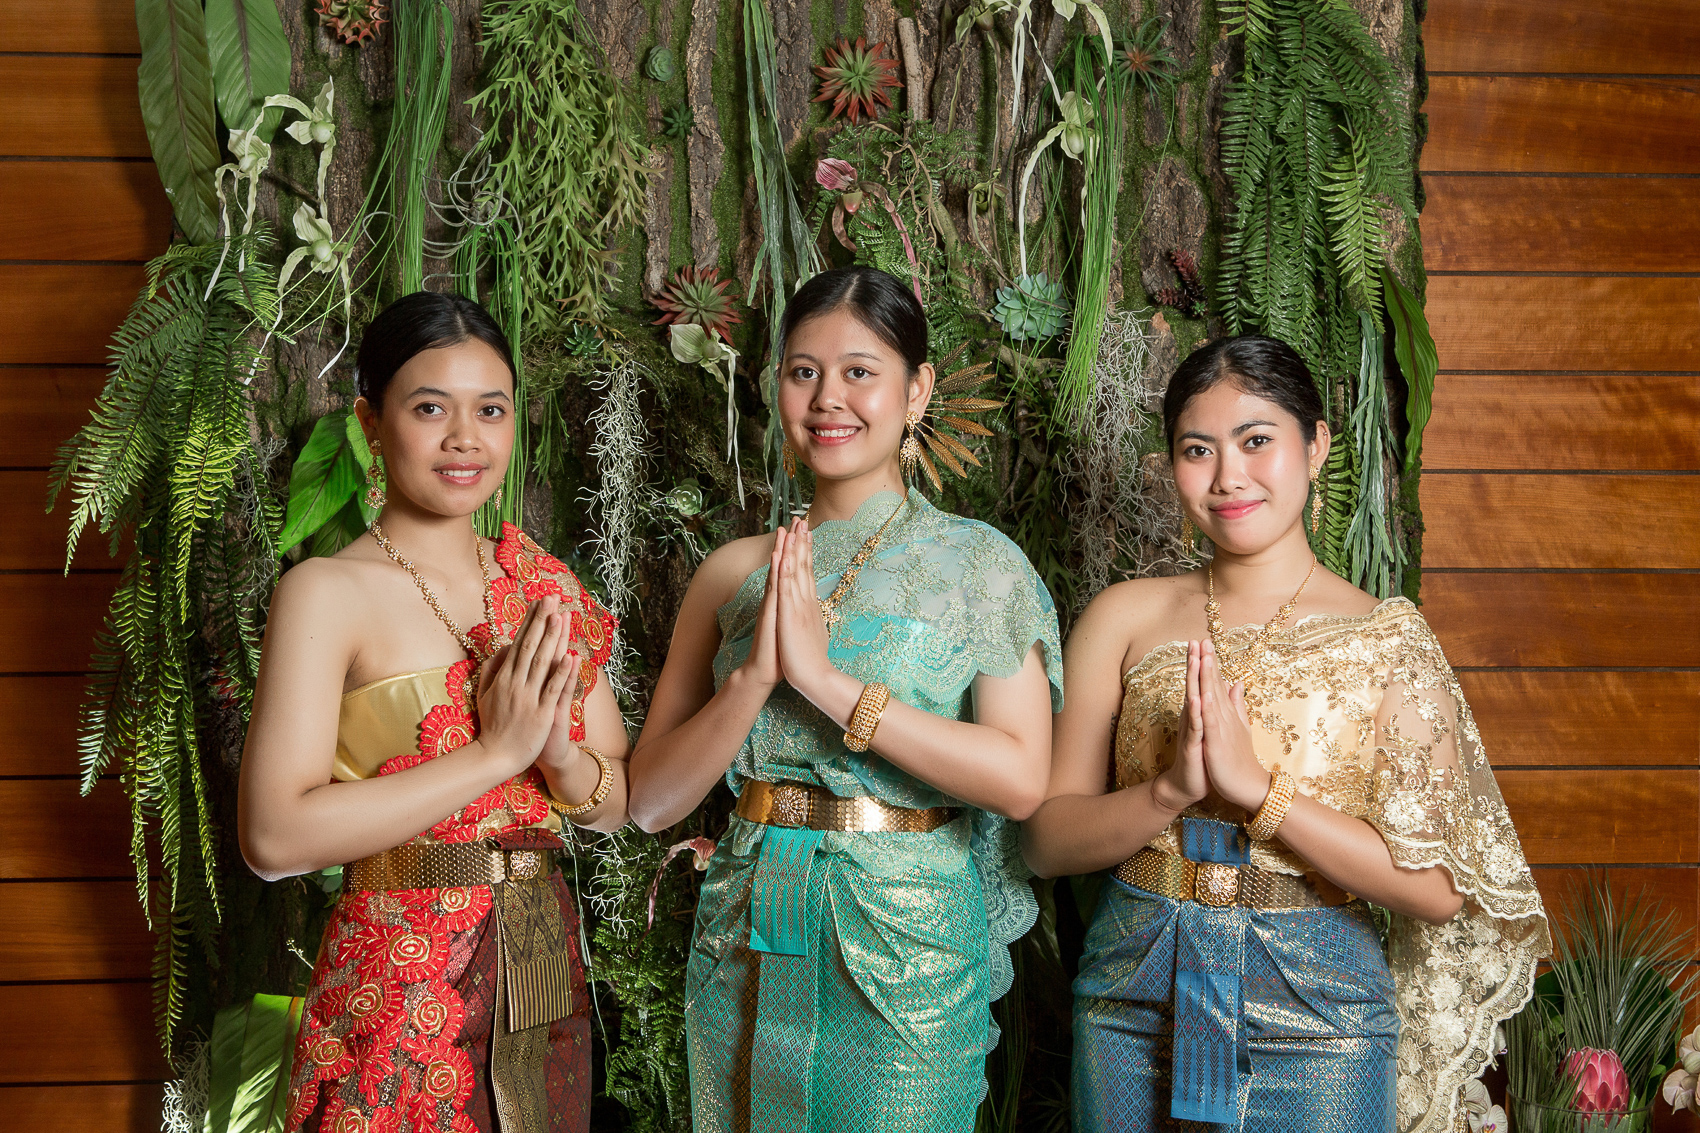 Тайский массаж: особенности и польза